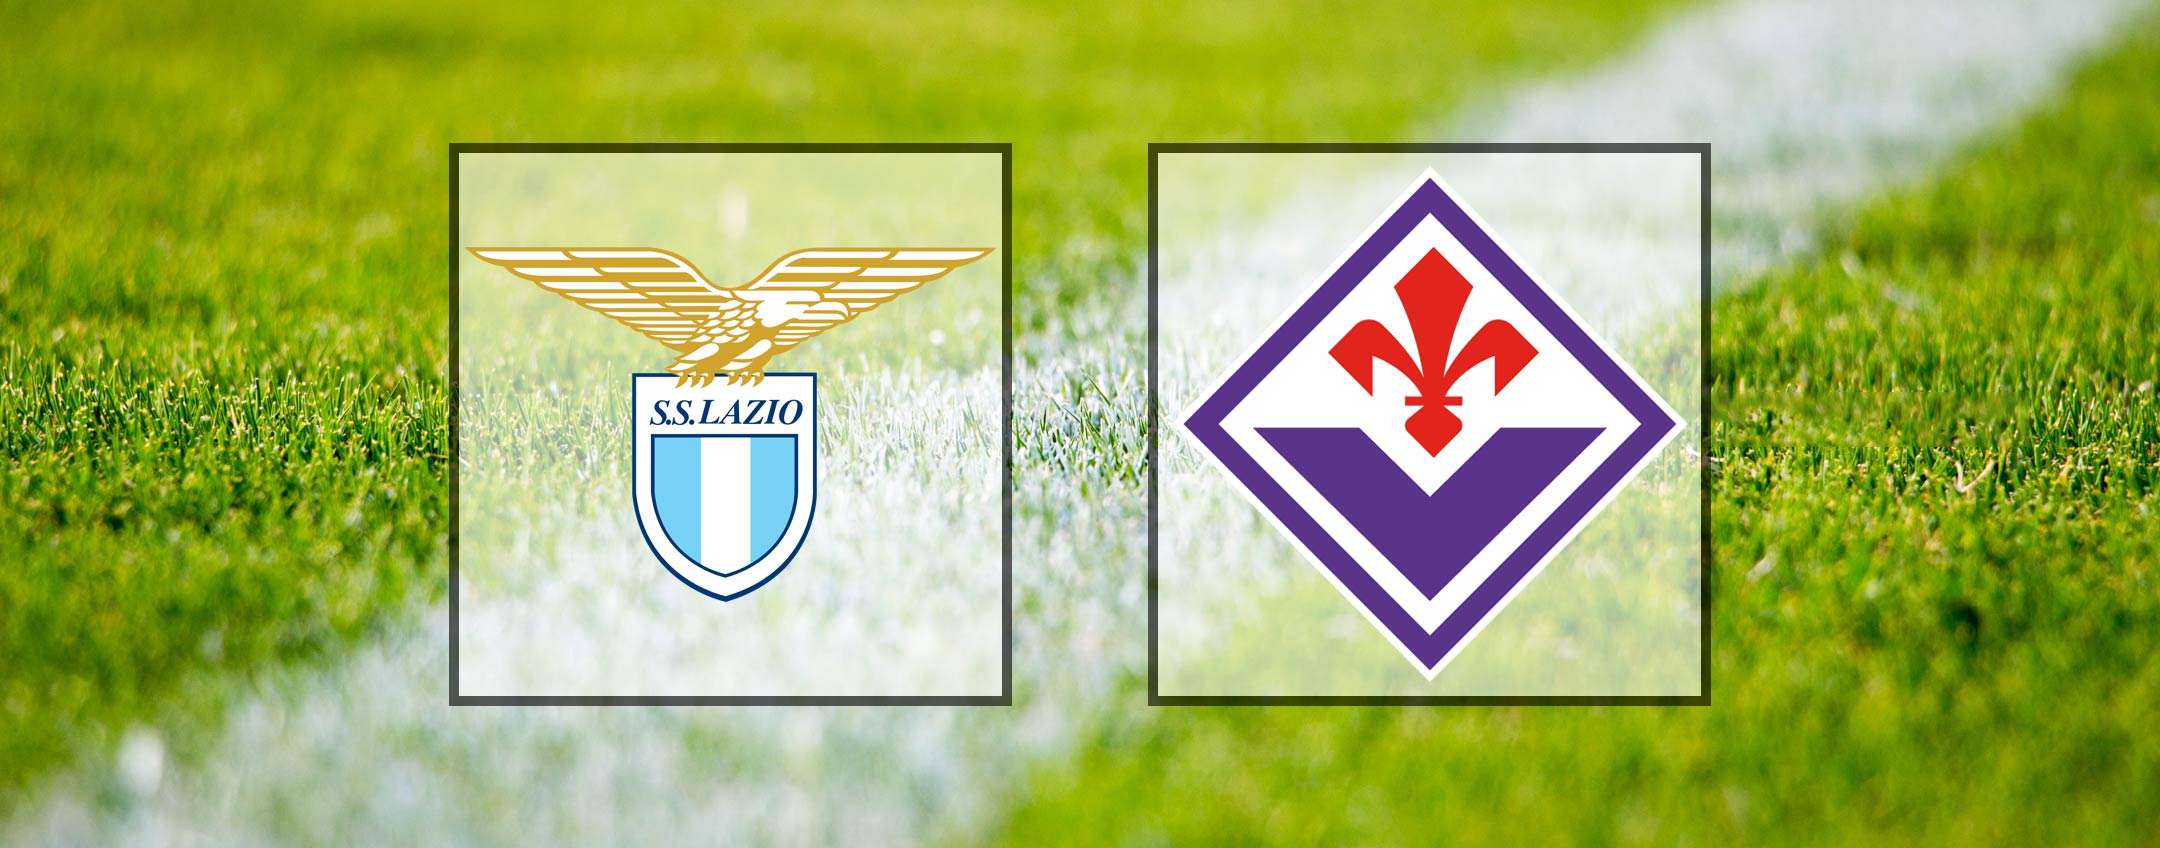 Come vedere Lazio-Fiorentina in diretta streaming (Serie A)